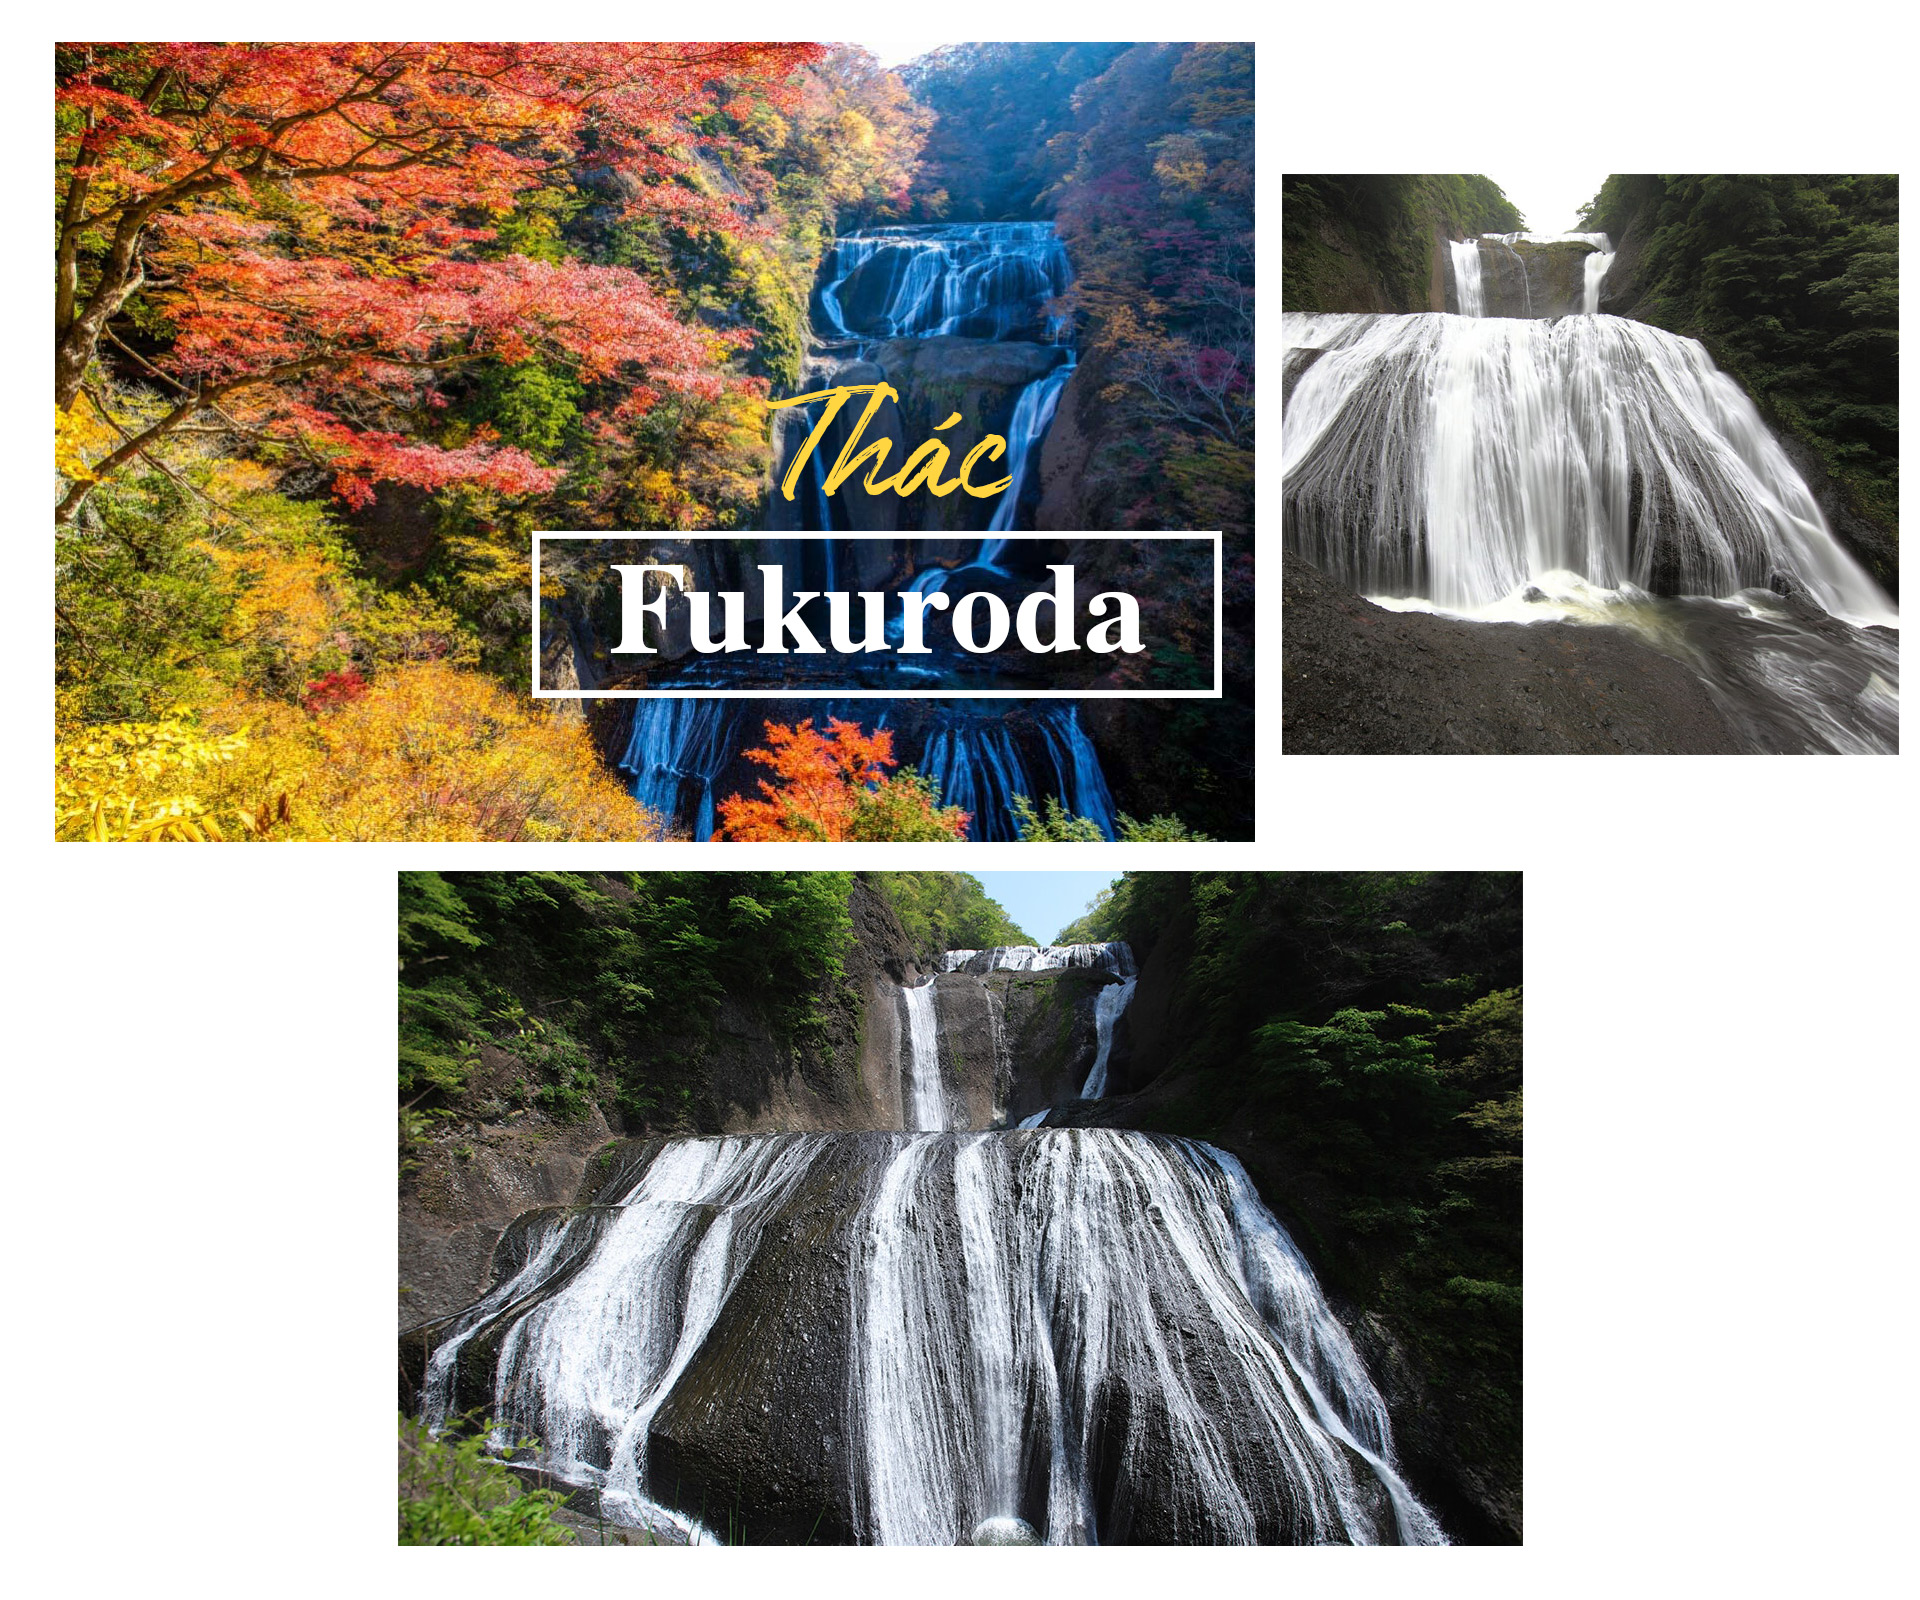 Chiêm ngưỡng những thác nước đẹp nhất Nhật Bản - 2